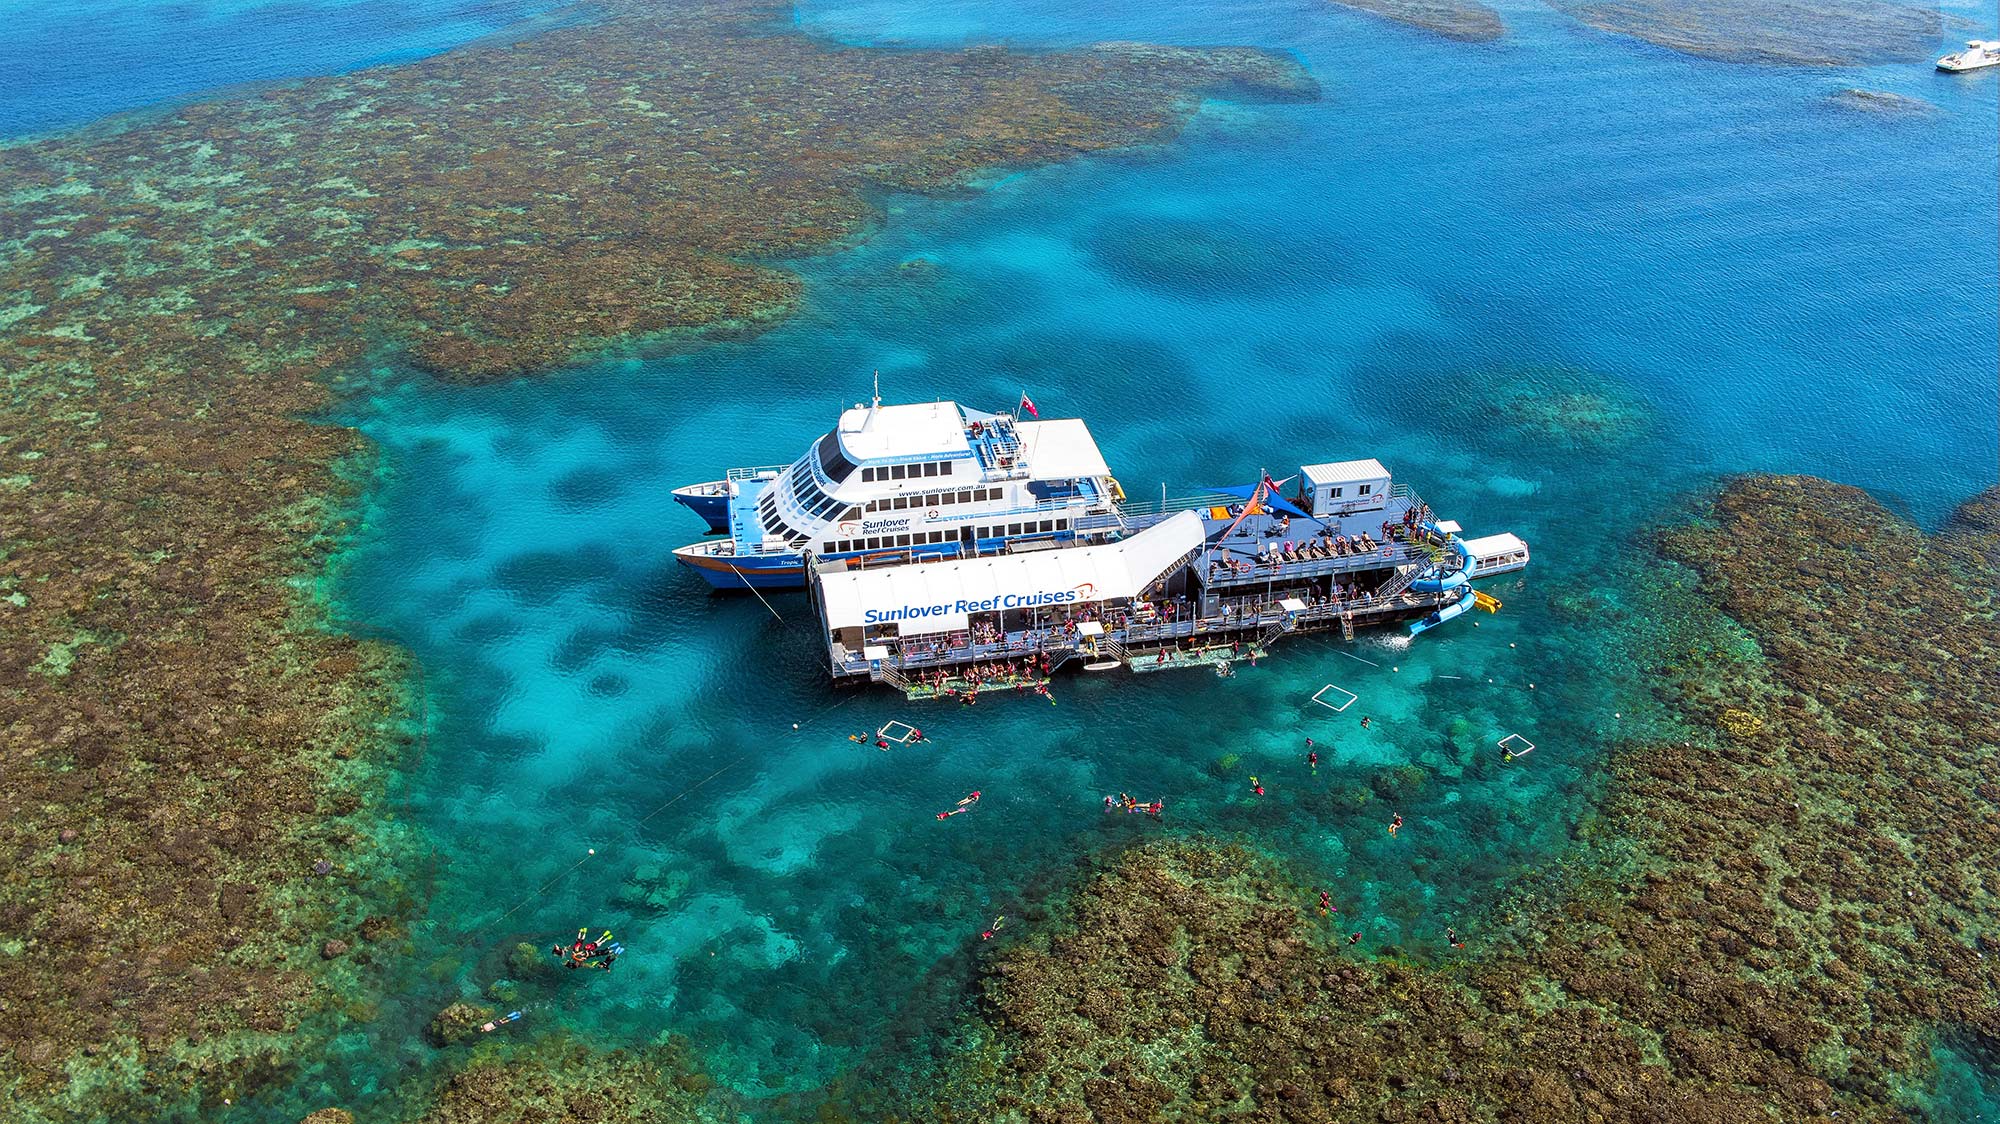 Sunlover Reef Cruises Moore Reef pontoon with waterslide